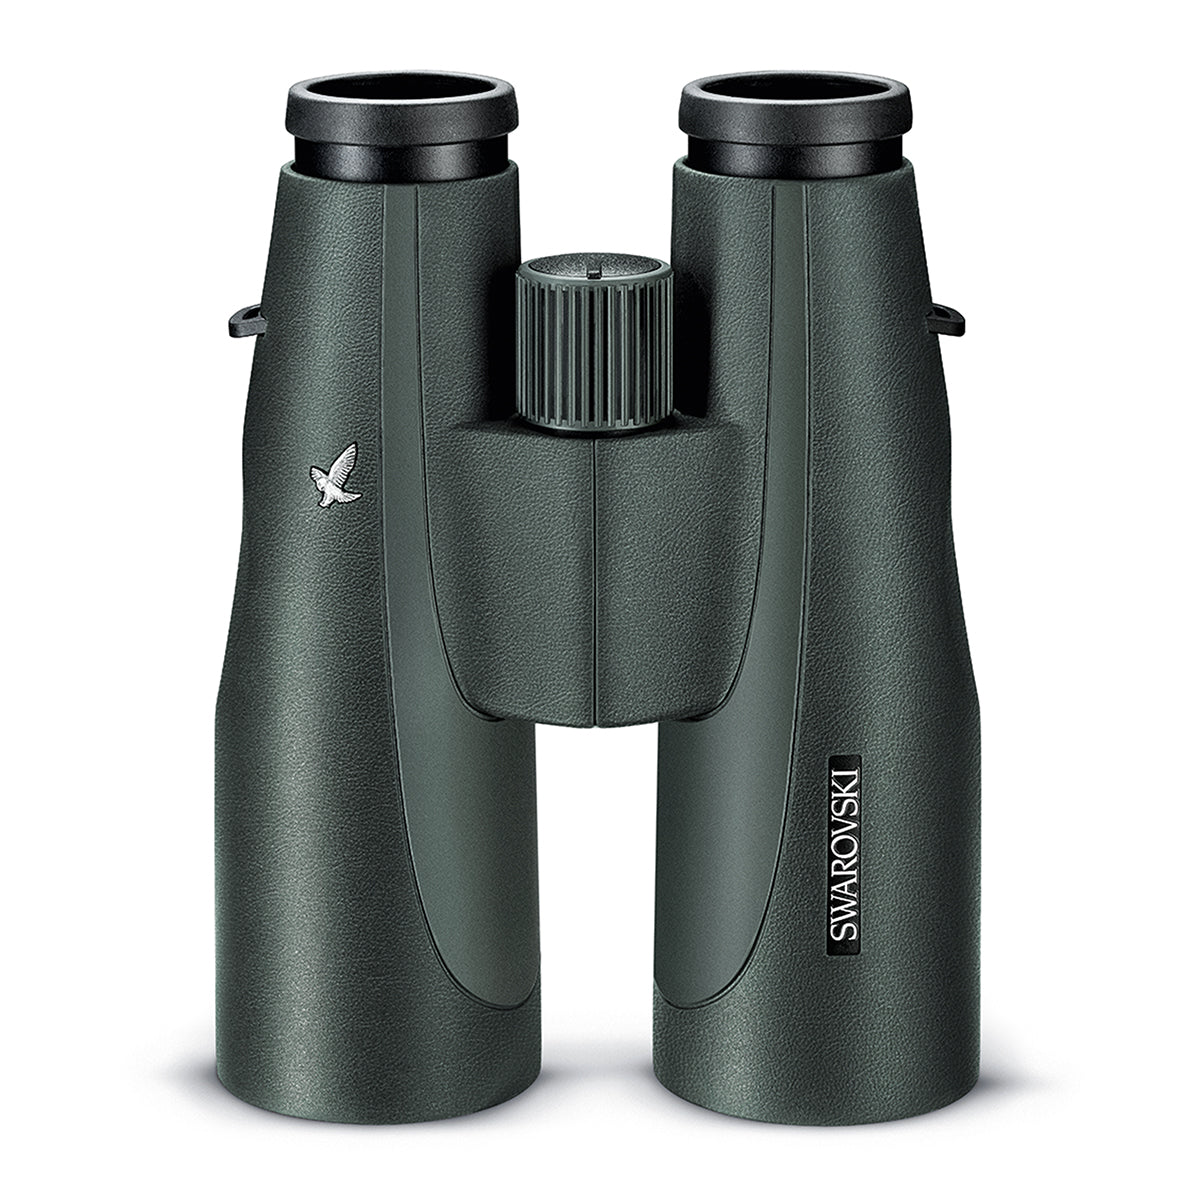 Swarovski SLC 15x56 W B Binocular in Swarovski SLC 15x56 W B Binocular by Swarovski Optik | Optics - goHUNT Shop by GOHUNT | Swarovski Optik - GOHUNT Shop